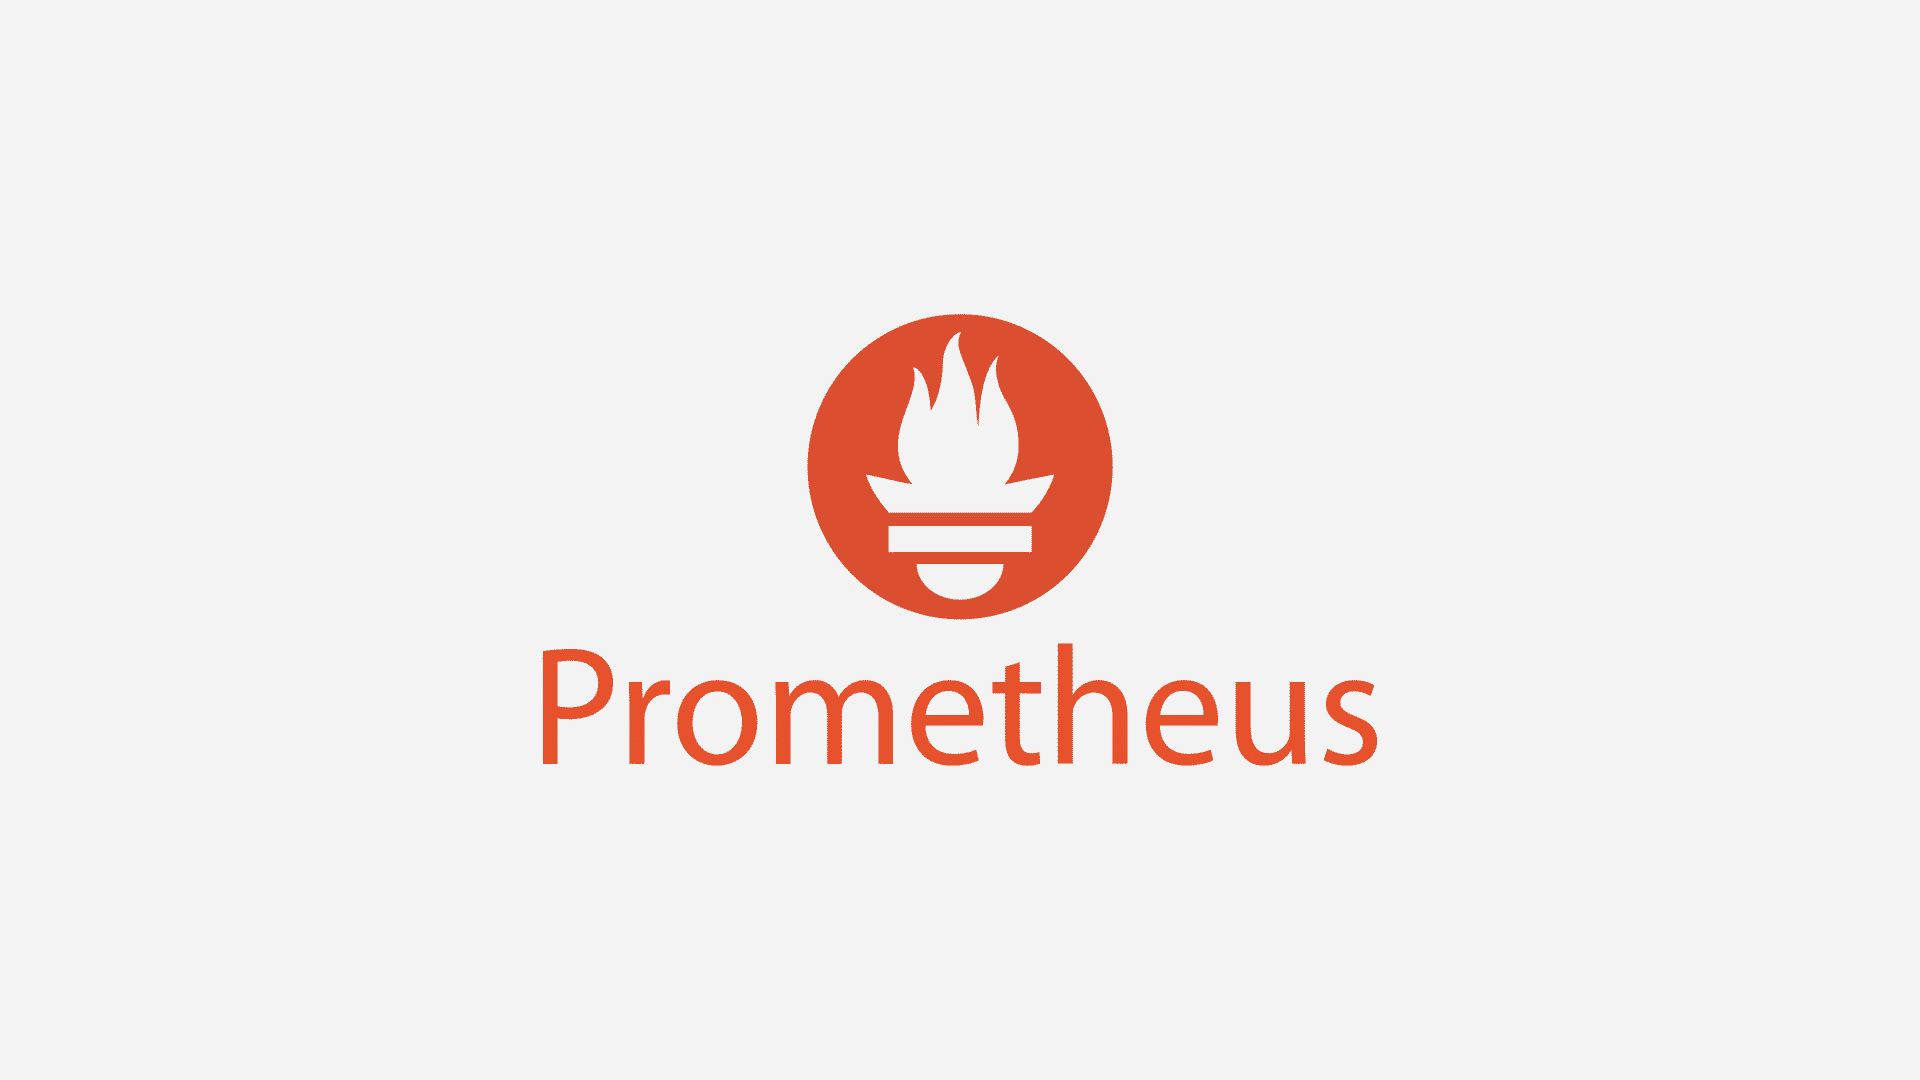 prometheus logo, prometheus ile monitoring işlemleri, prometheus full hd logo, yüksek çözünürlüklü prometheus logosu